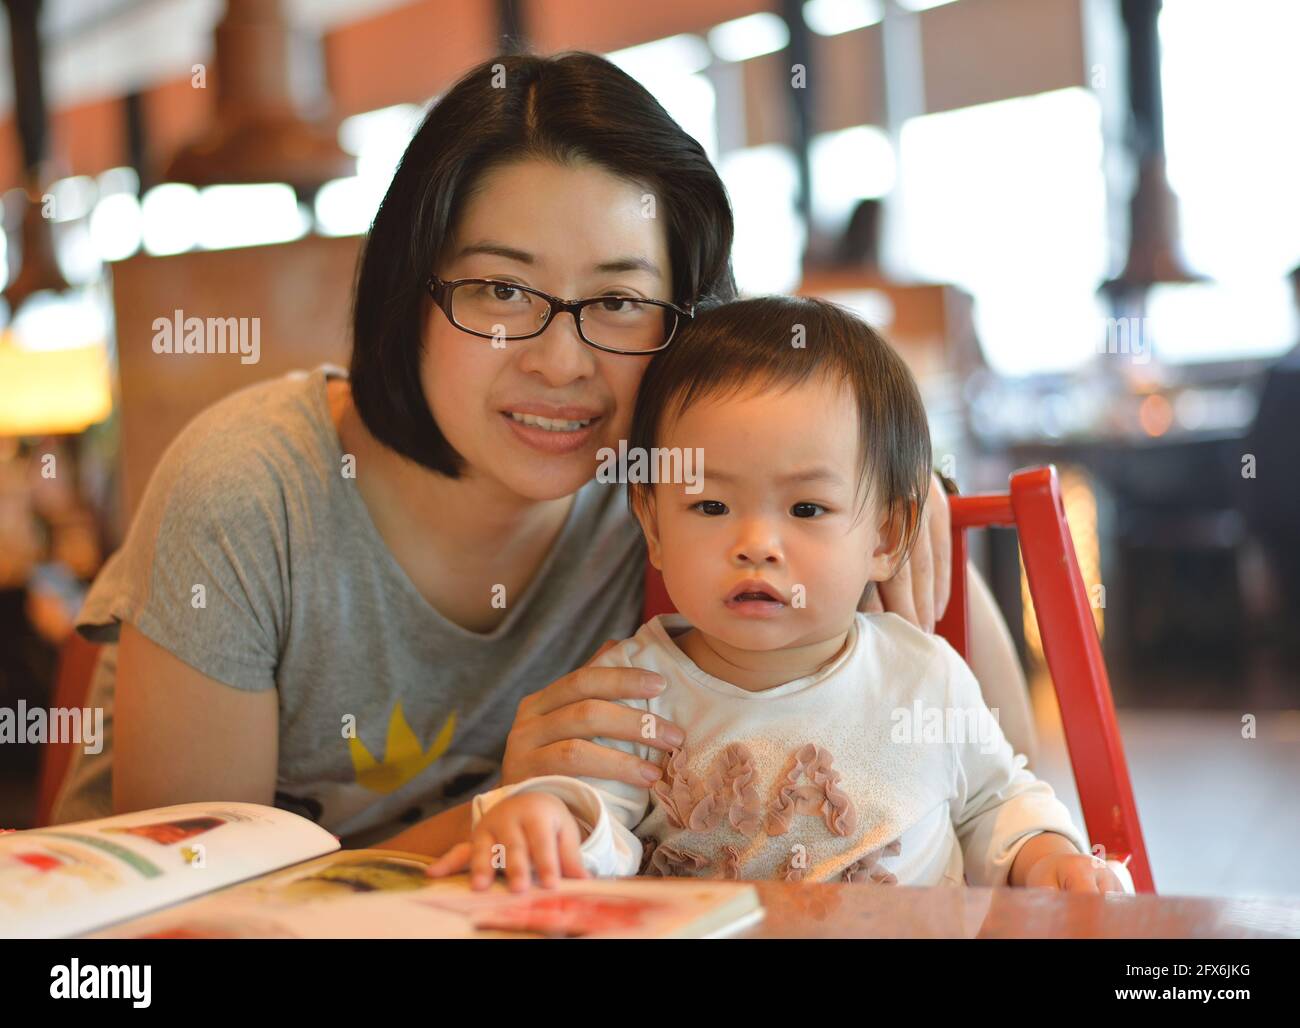 Schöne asiatische Mutter und Kleinkind Mädchen zusammen in einem Restaurant, Frau mit Brille. Stockfoto